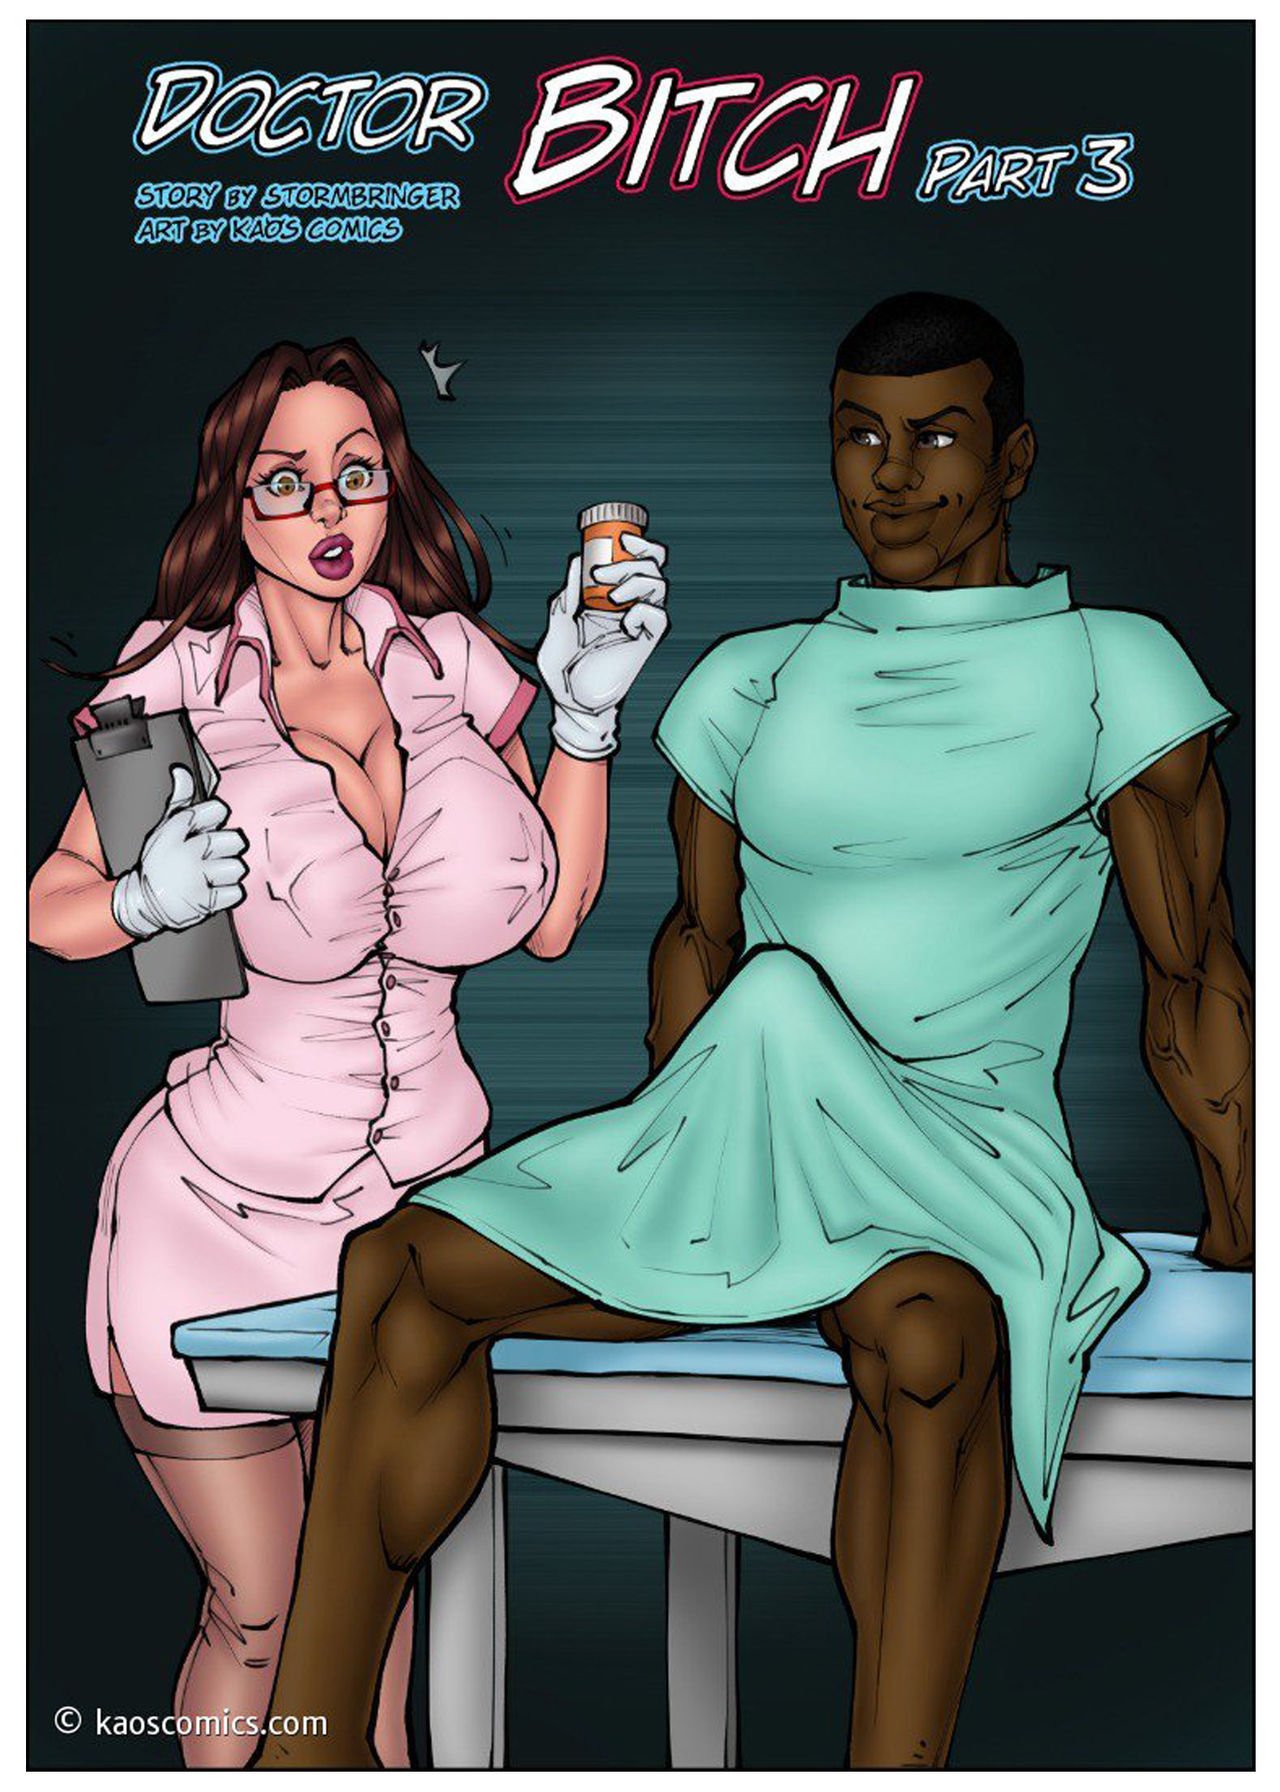 Doctor Bitch 3 (FULL) - Kaos Comics Foto